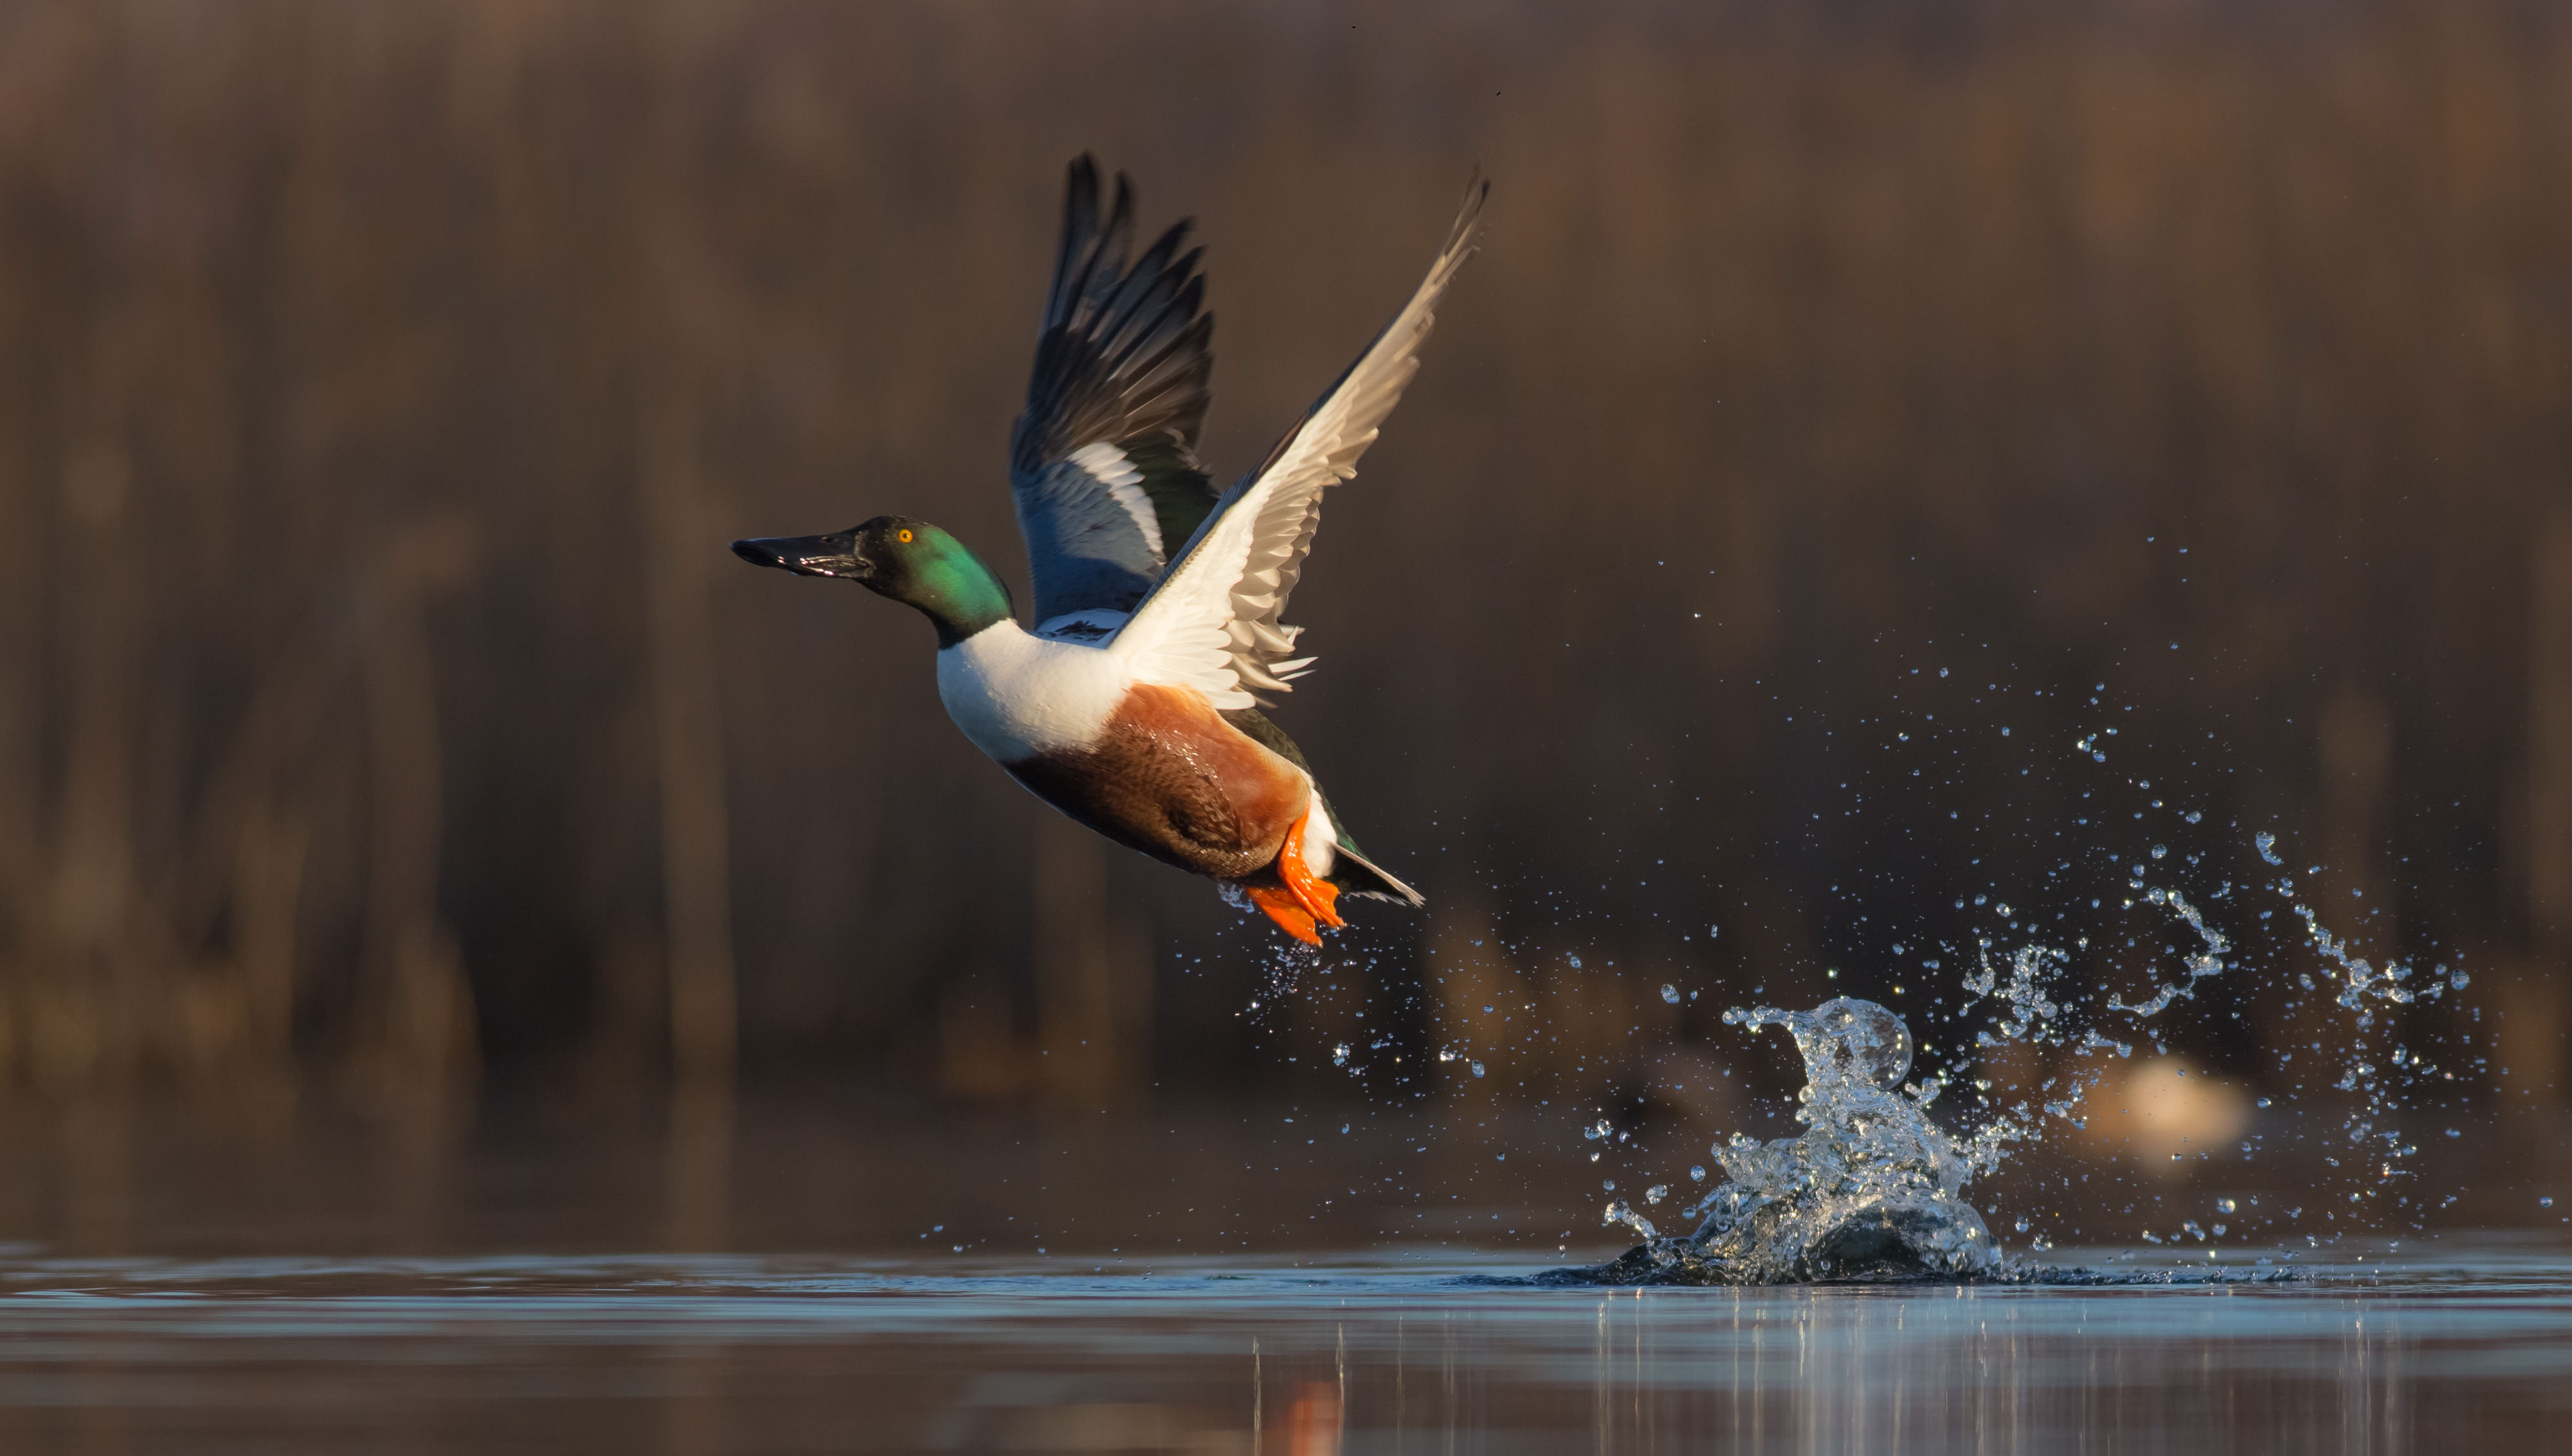 Green head with wings in flight splashing in water.